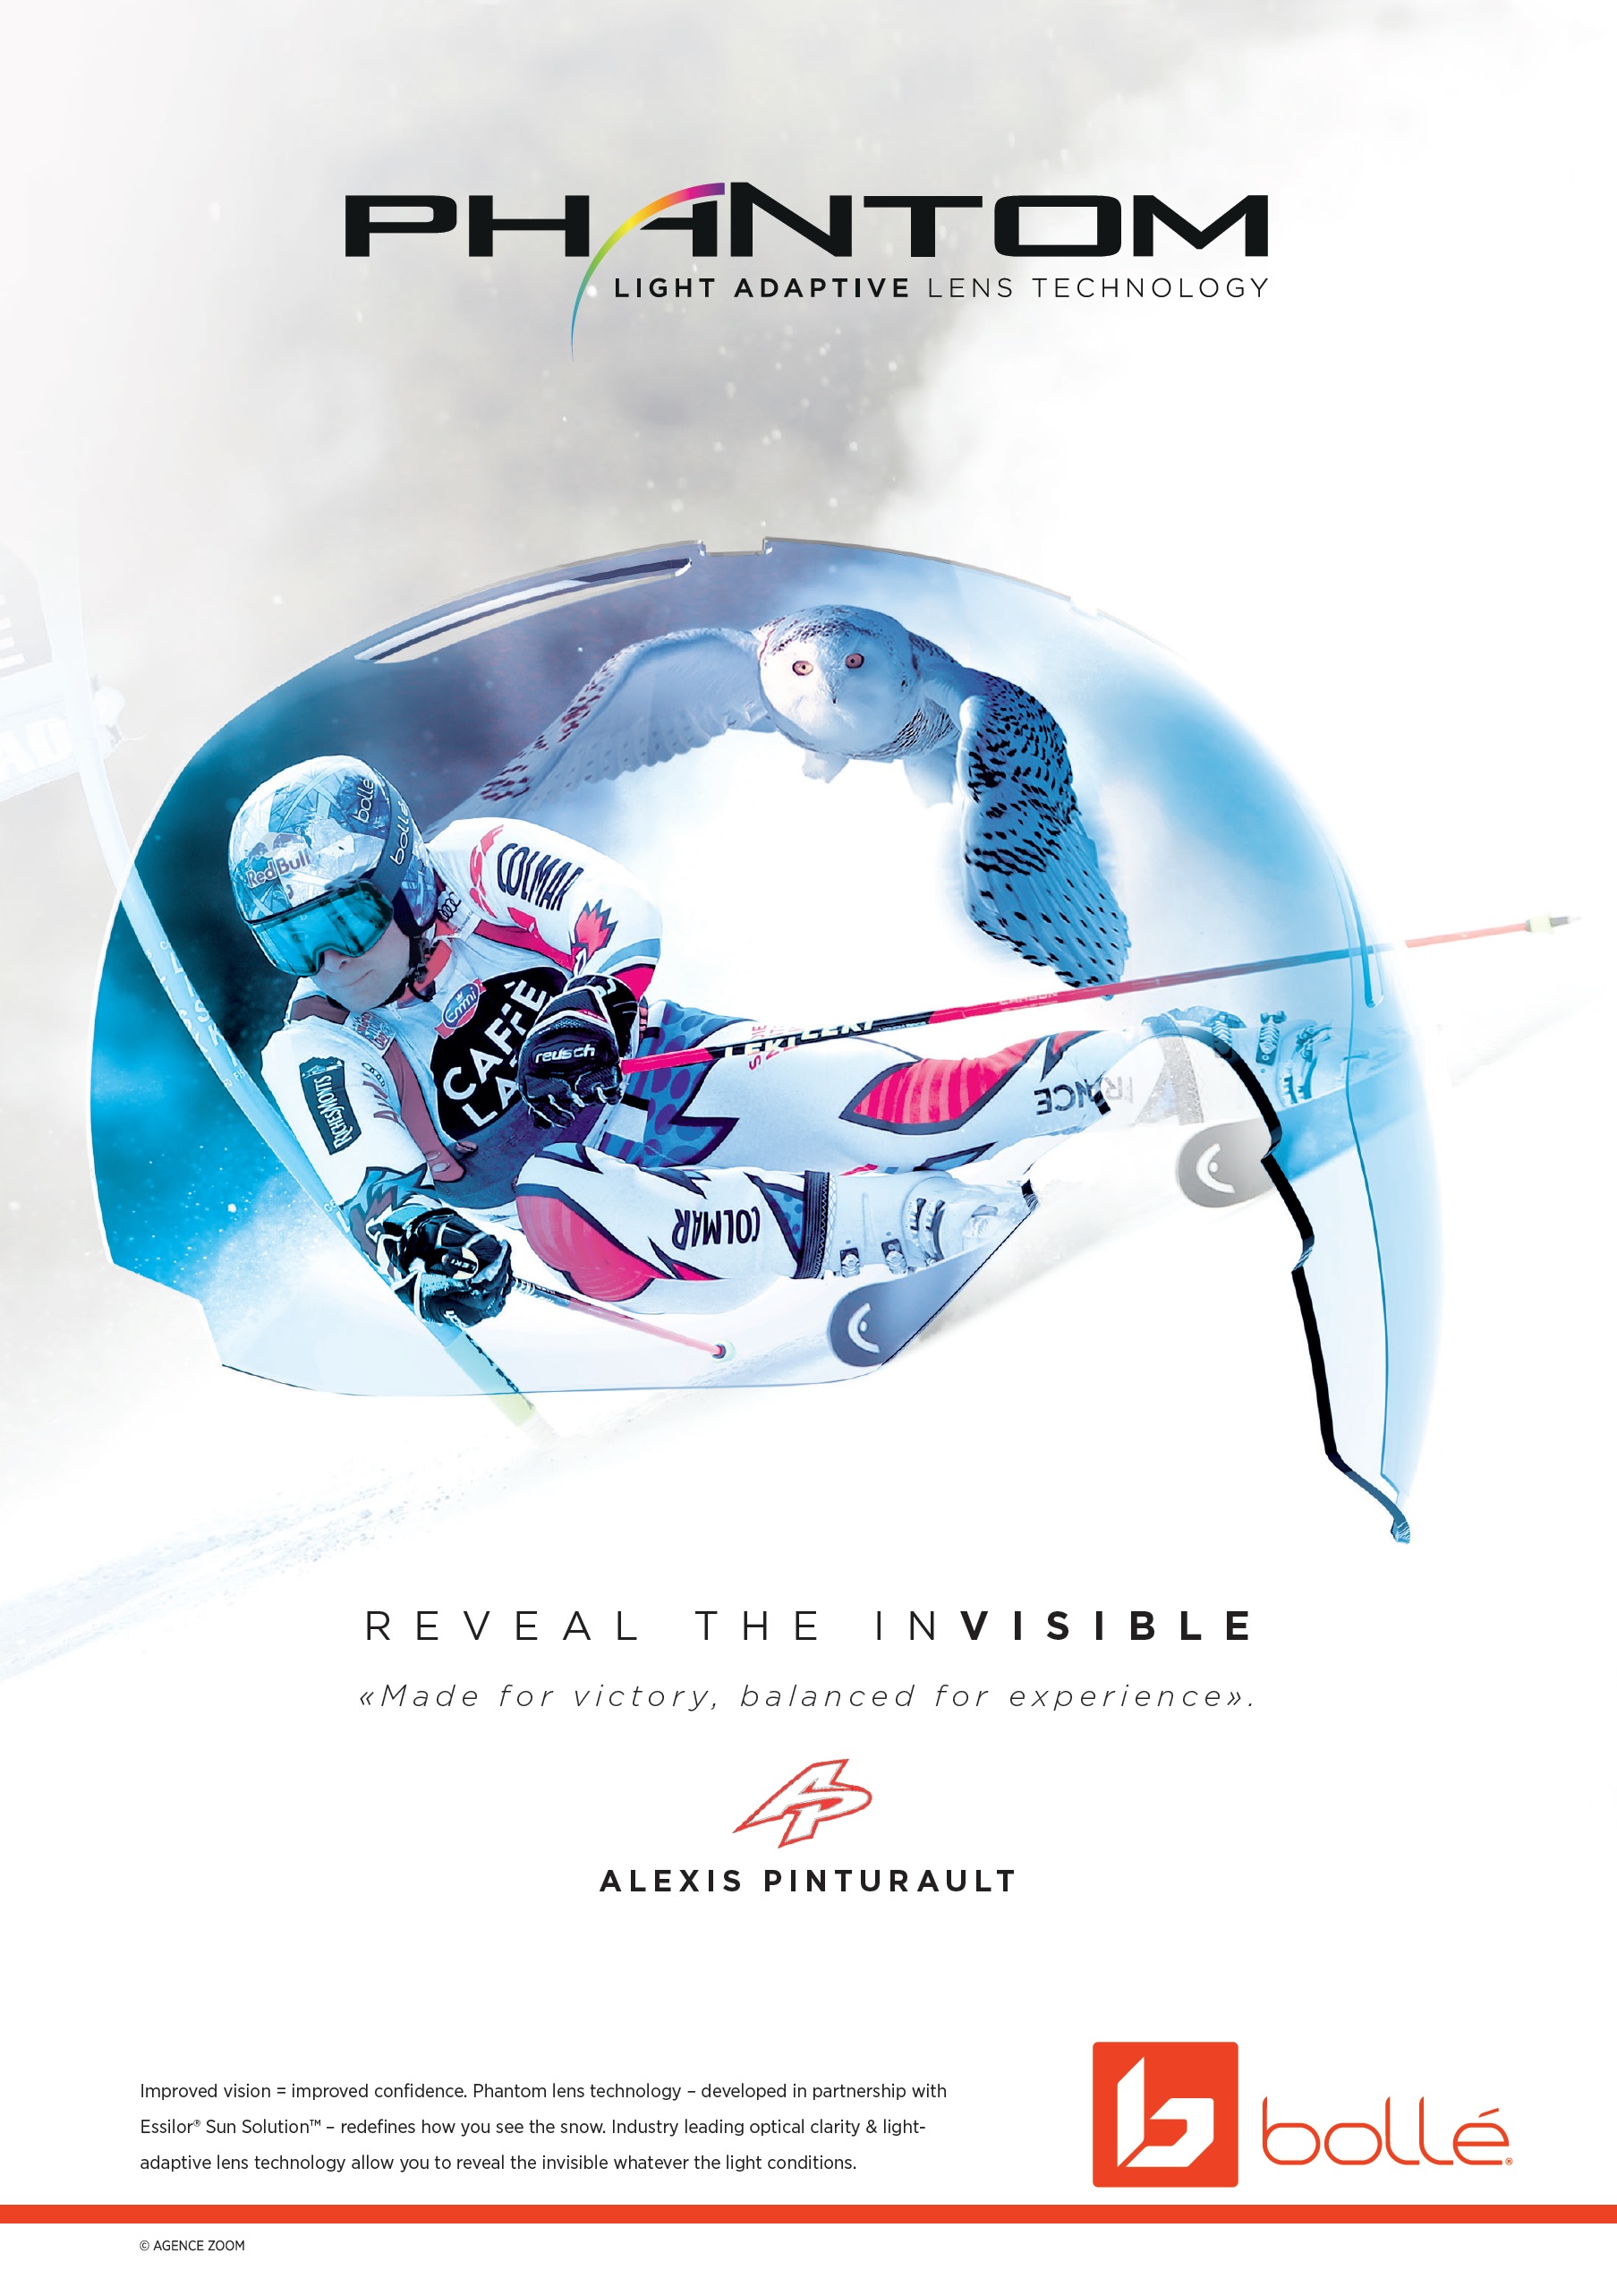 Unisex downhill ski goggles